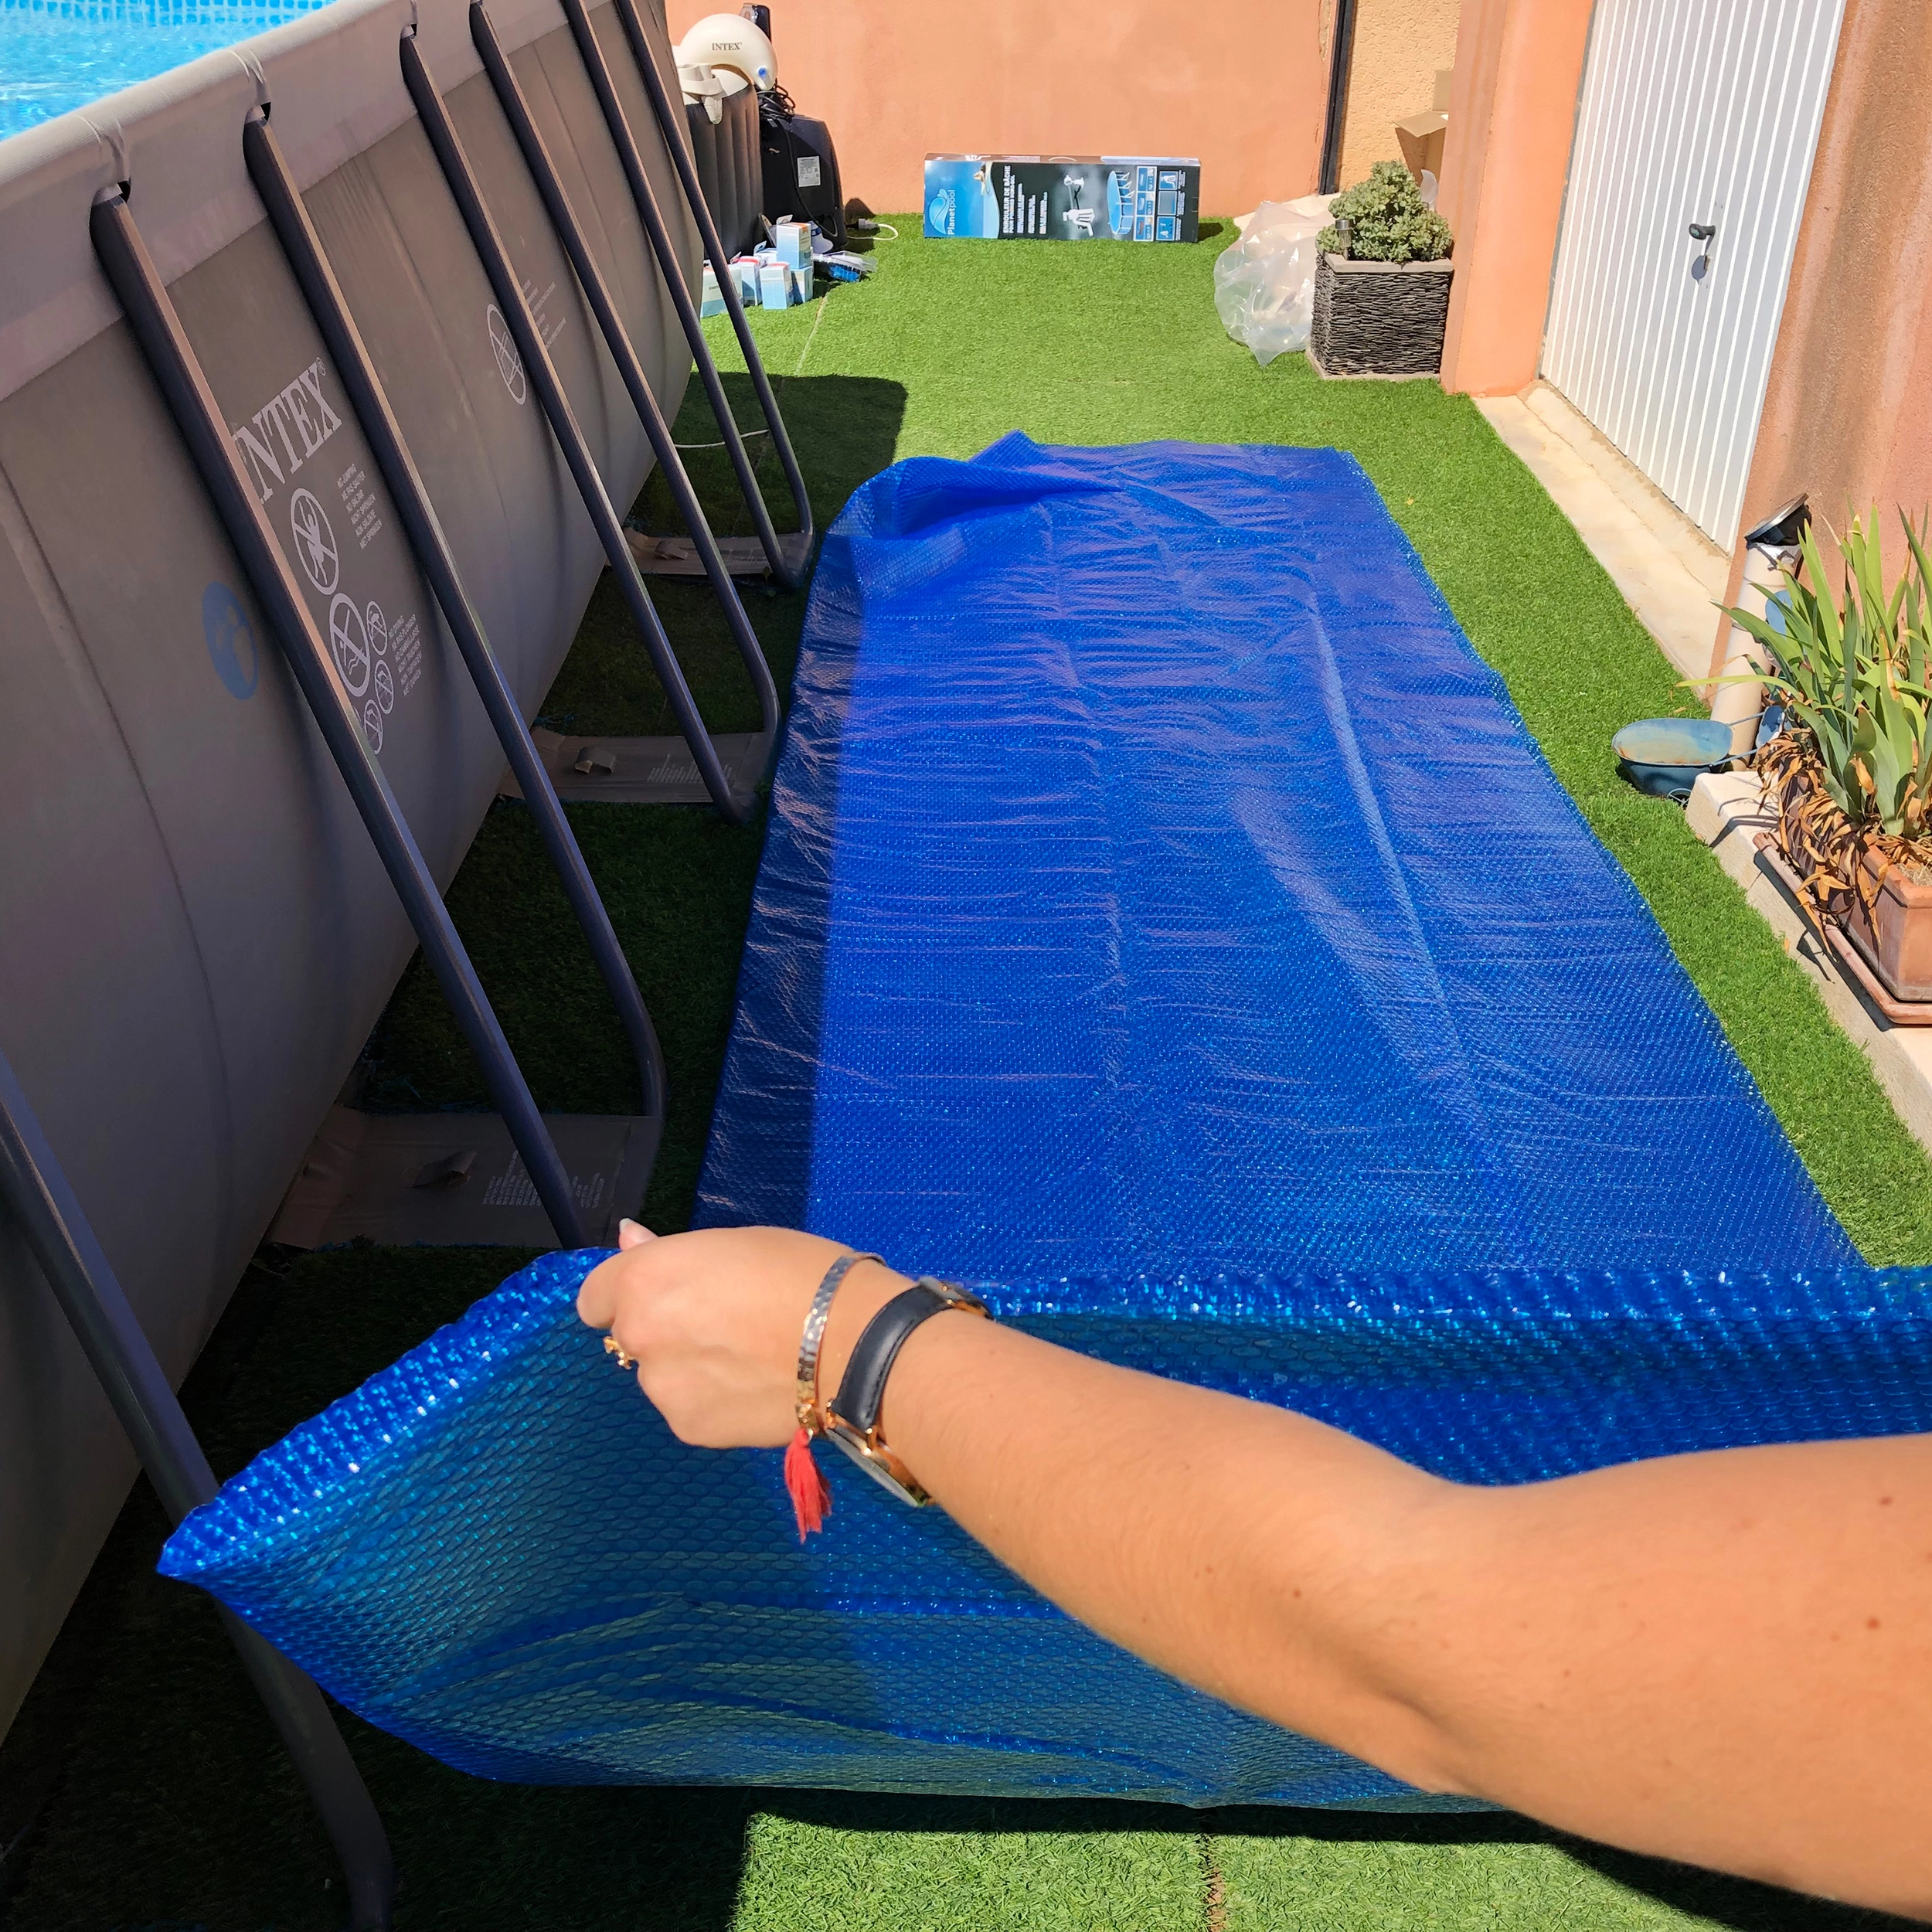 Summer Fun Pool-Solarfolie Standard für Rundpools Ø 450 cm bis 460 cm